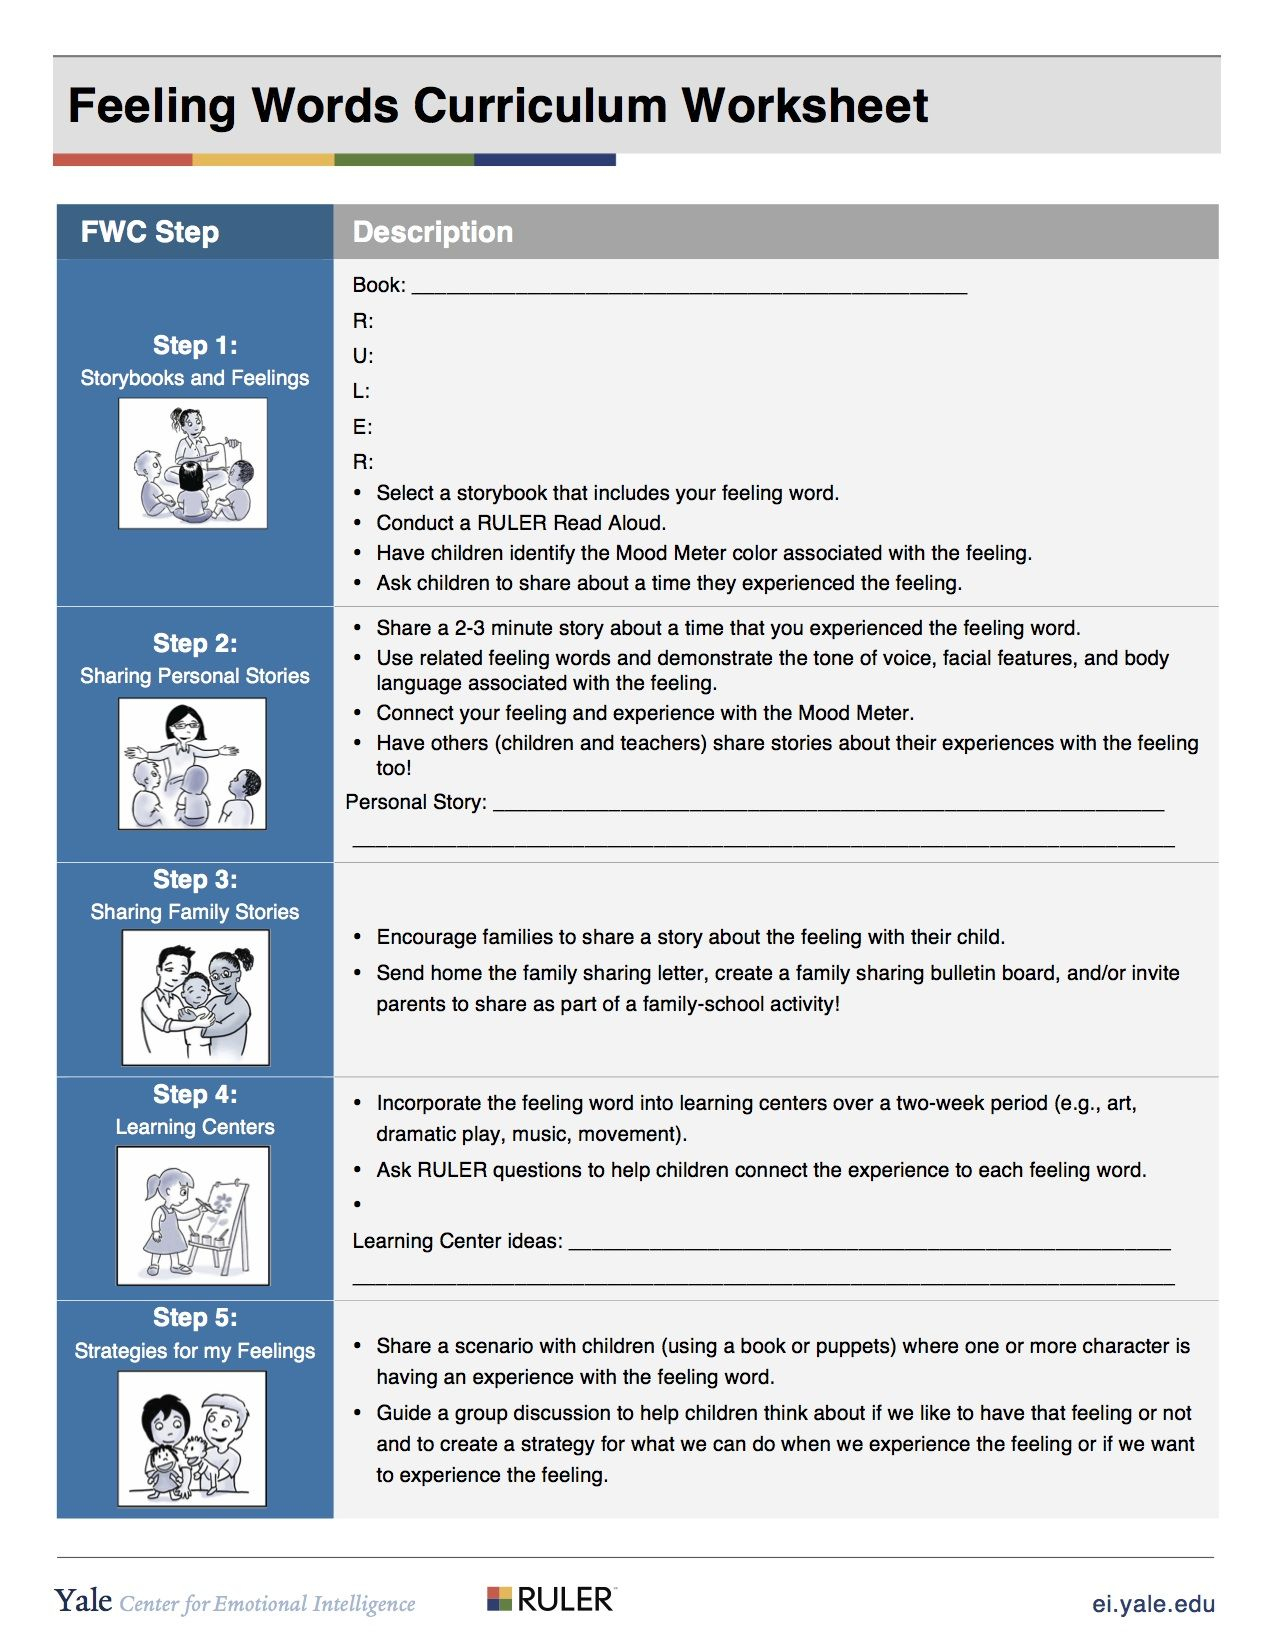 Fwc Steps Worksheet [Preschool] | Feelings Words